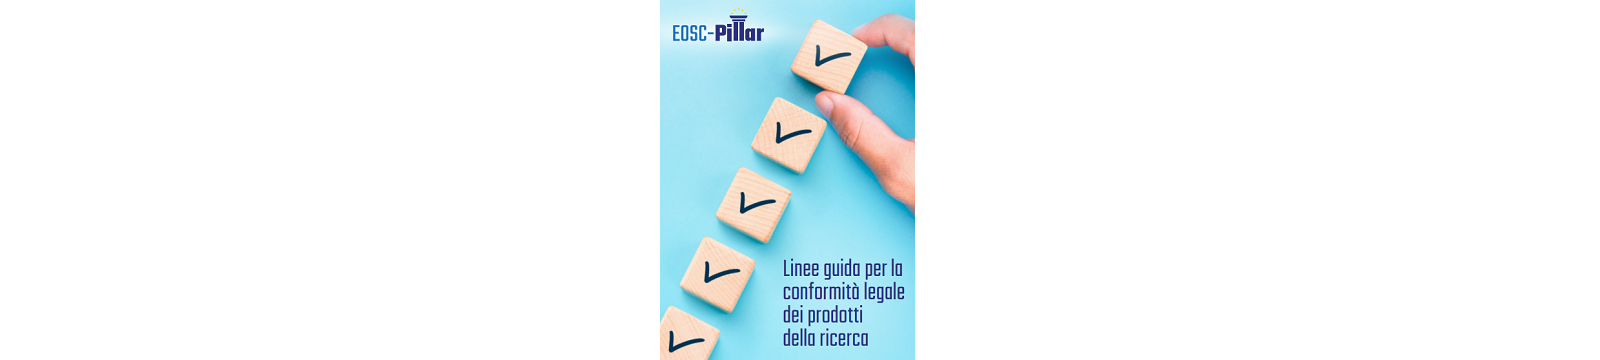 Pubblicata la checklist del progetto EOSC Pillar